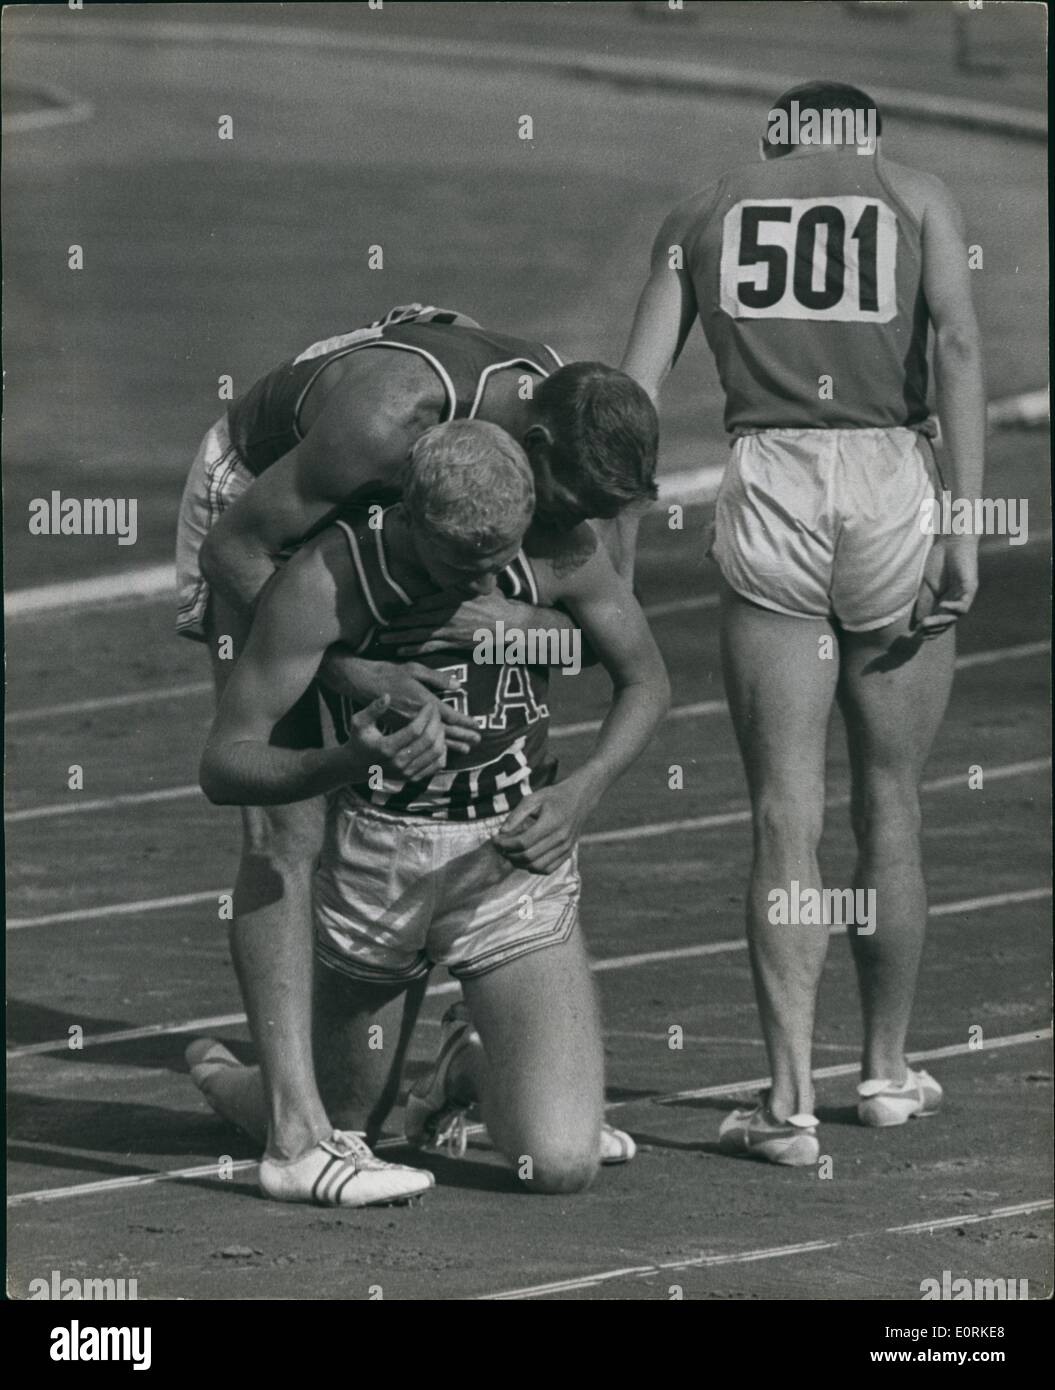 00 déc., 1960 - Les Jeux Olympiques de 1960 à Rome les Américains prendre les trois médailles dans les haies : Glenn Davis de l'U.S a été les Jeux Olympiques d'hommes' s 400 mètres haies dernière aujourd'hui, avec ses coéquipiers Clifton Cushman, deuxième et Richard Howard, troisième. Photo montre Glenn Davis vient à l'aide de Clifton Cushman lorsqu'il s'est effondré après la finale du 400 mètres haies dernière aujourd'hui. Banque D'Images